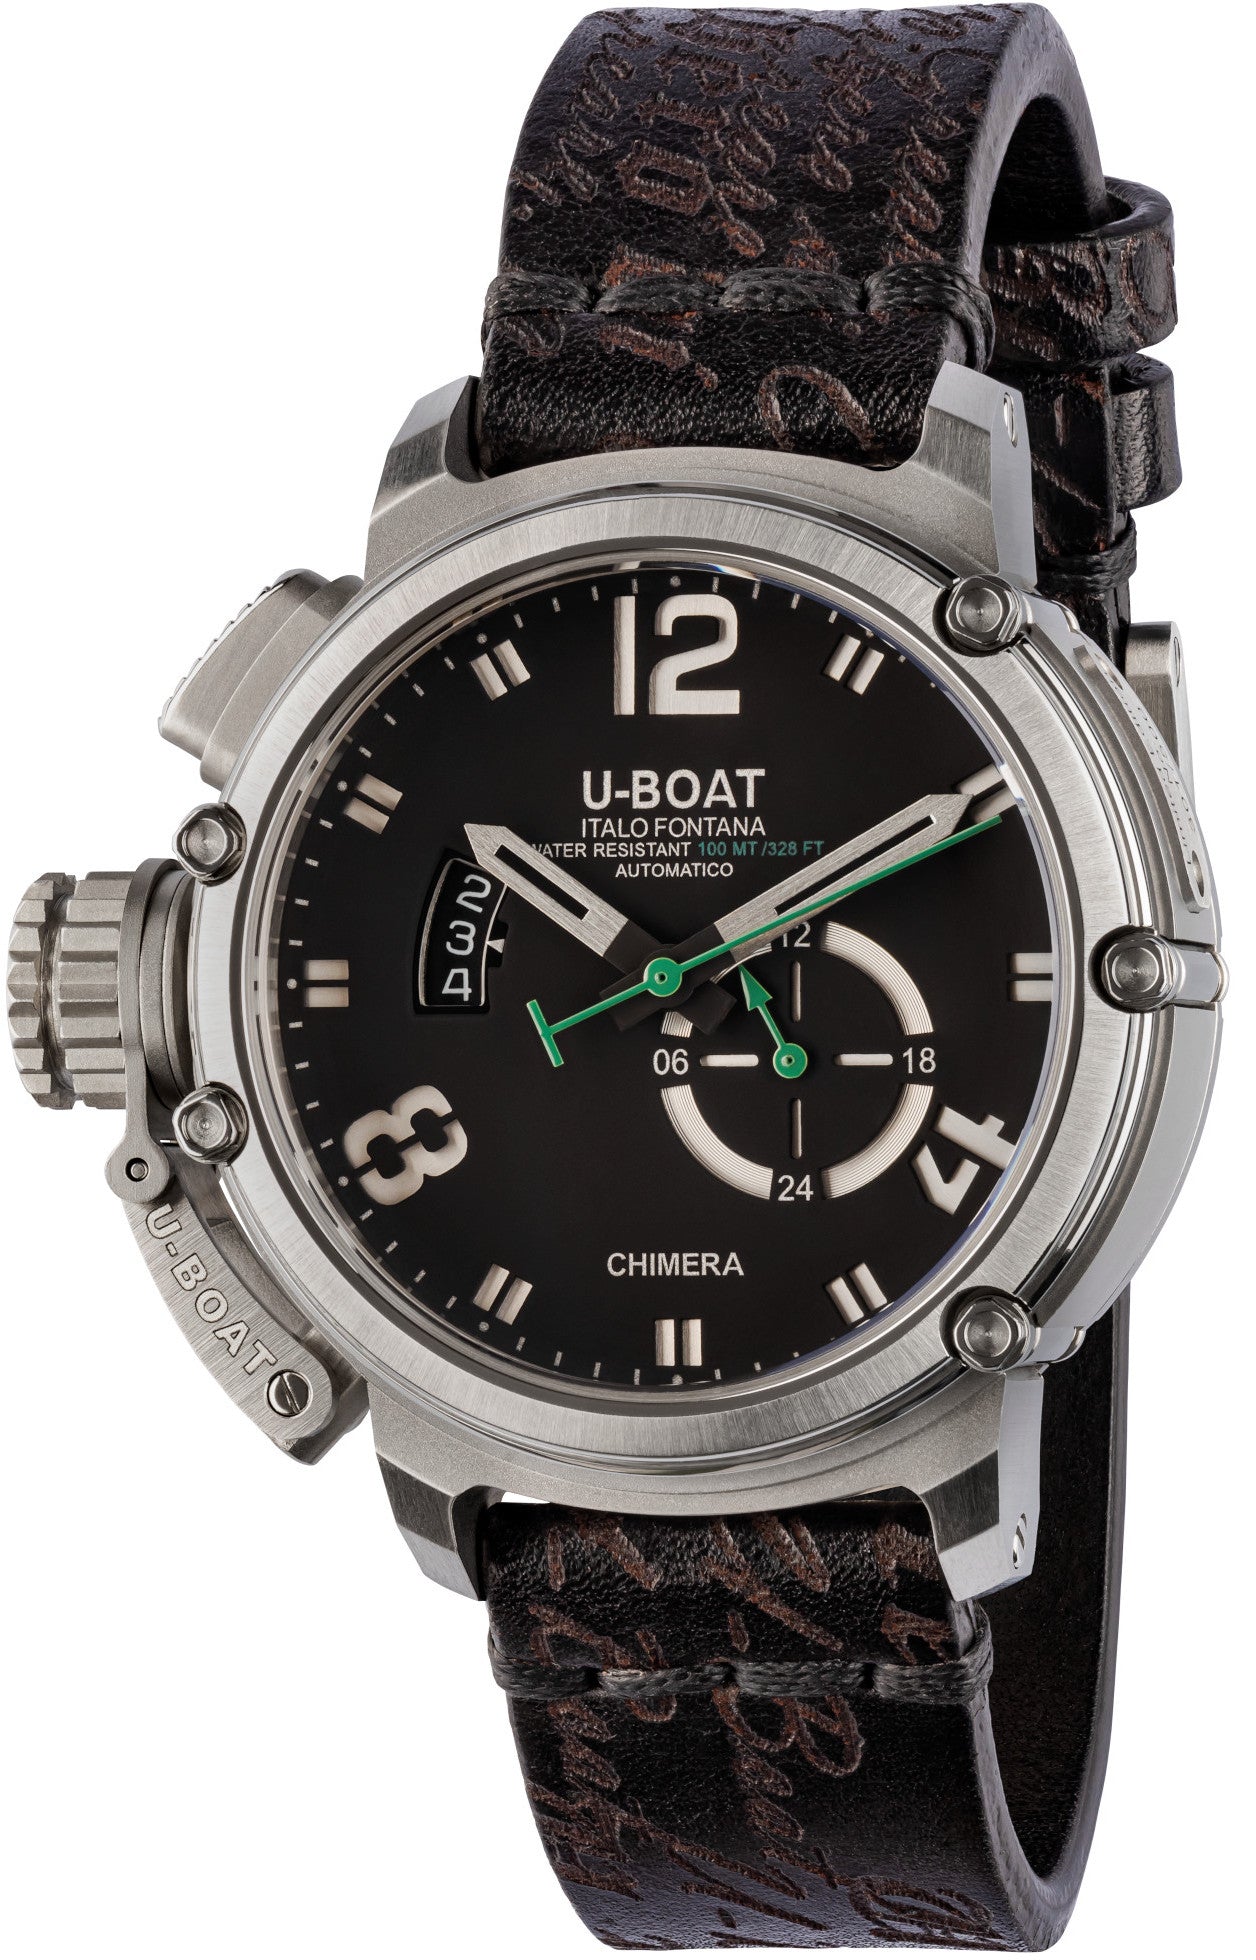 Photos - Wrist Watch U-Boat Watch Chimera Green Steel Limited Edition D UB-1008 